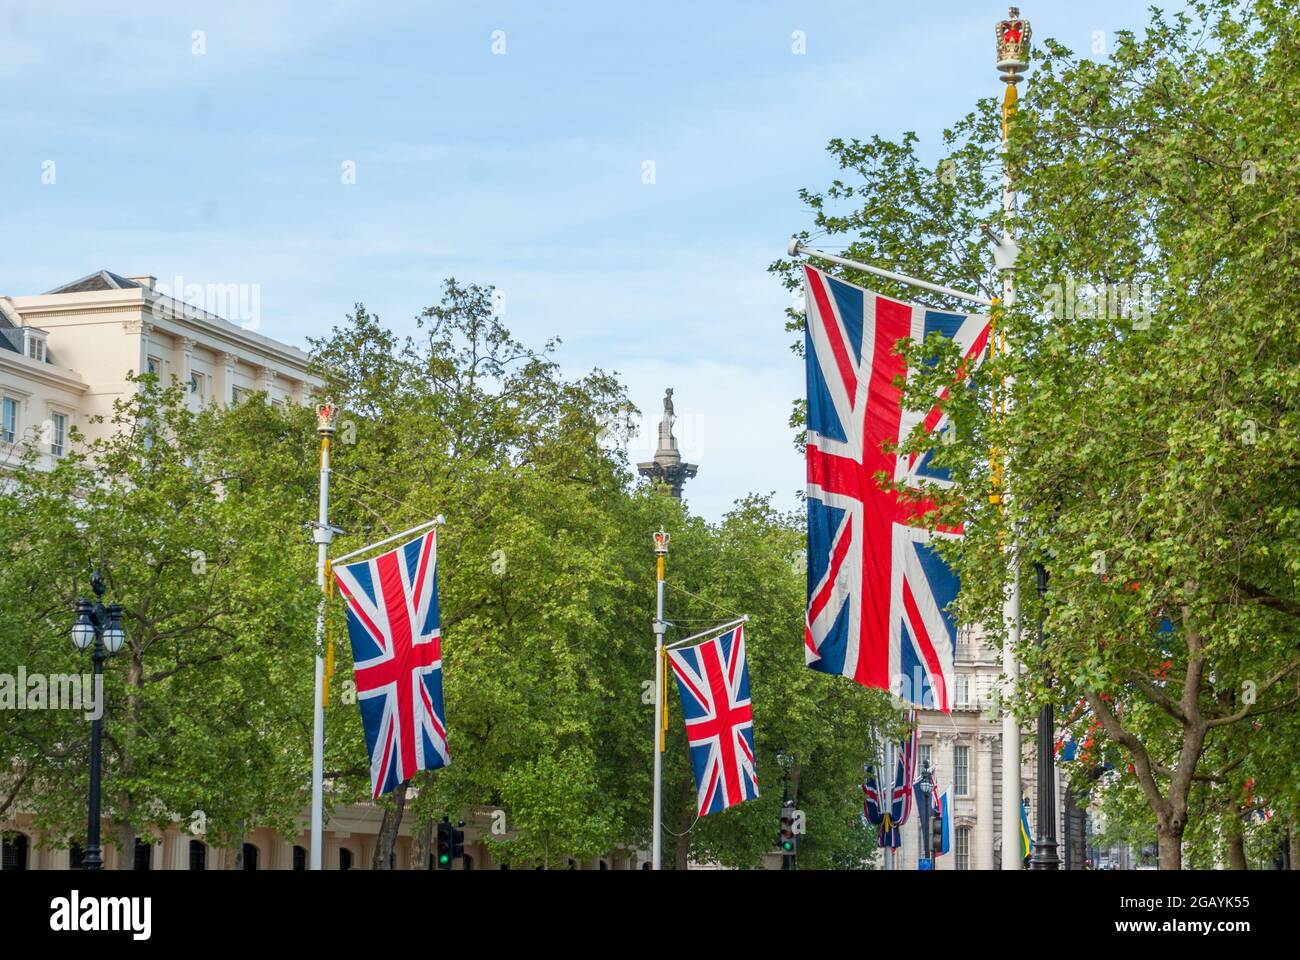 London - Großbritannien, 2015-05-10: Londen feiert den 70. Jahrestag des Endes des Zweiten Weltkriegs in Europa am VE-Tag, dem Gedenktag des Sieges in Europa. Die Mall ist mit britischen Flaggen geschmückt. Im Hintergrund erhebt sich die Statue von Admiral Horatio Nelson auf der Nelson-Säule knapp über den Bäumen. Foto archivieren. Stockfoto